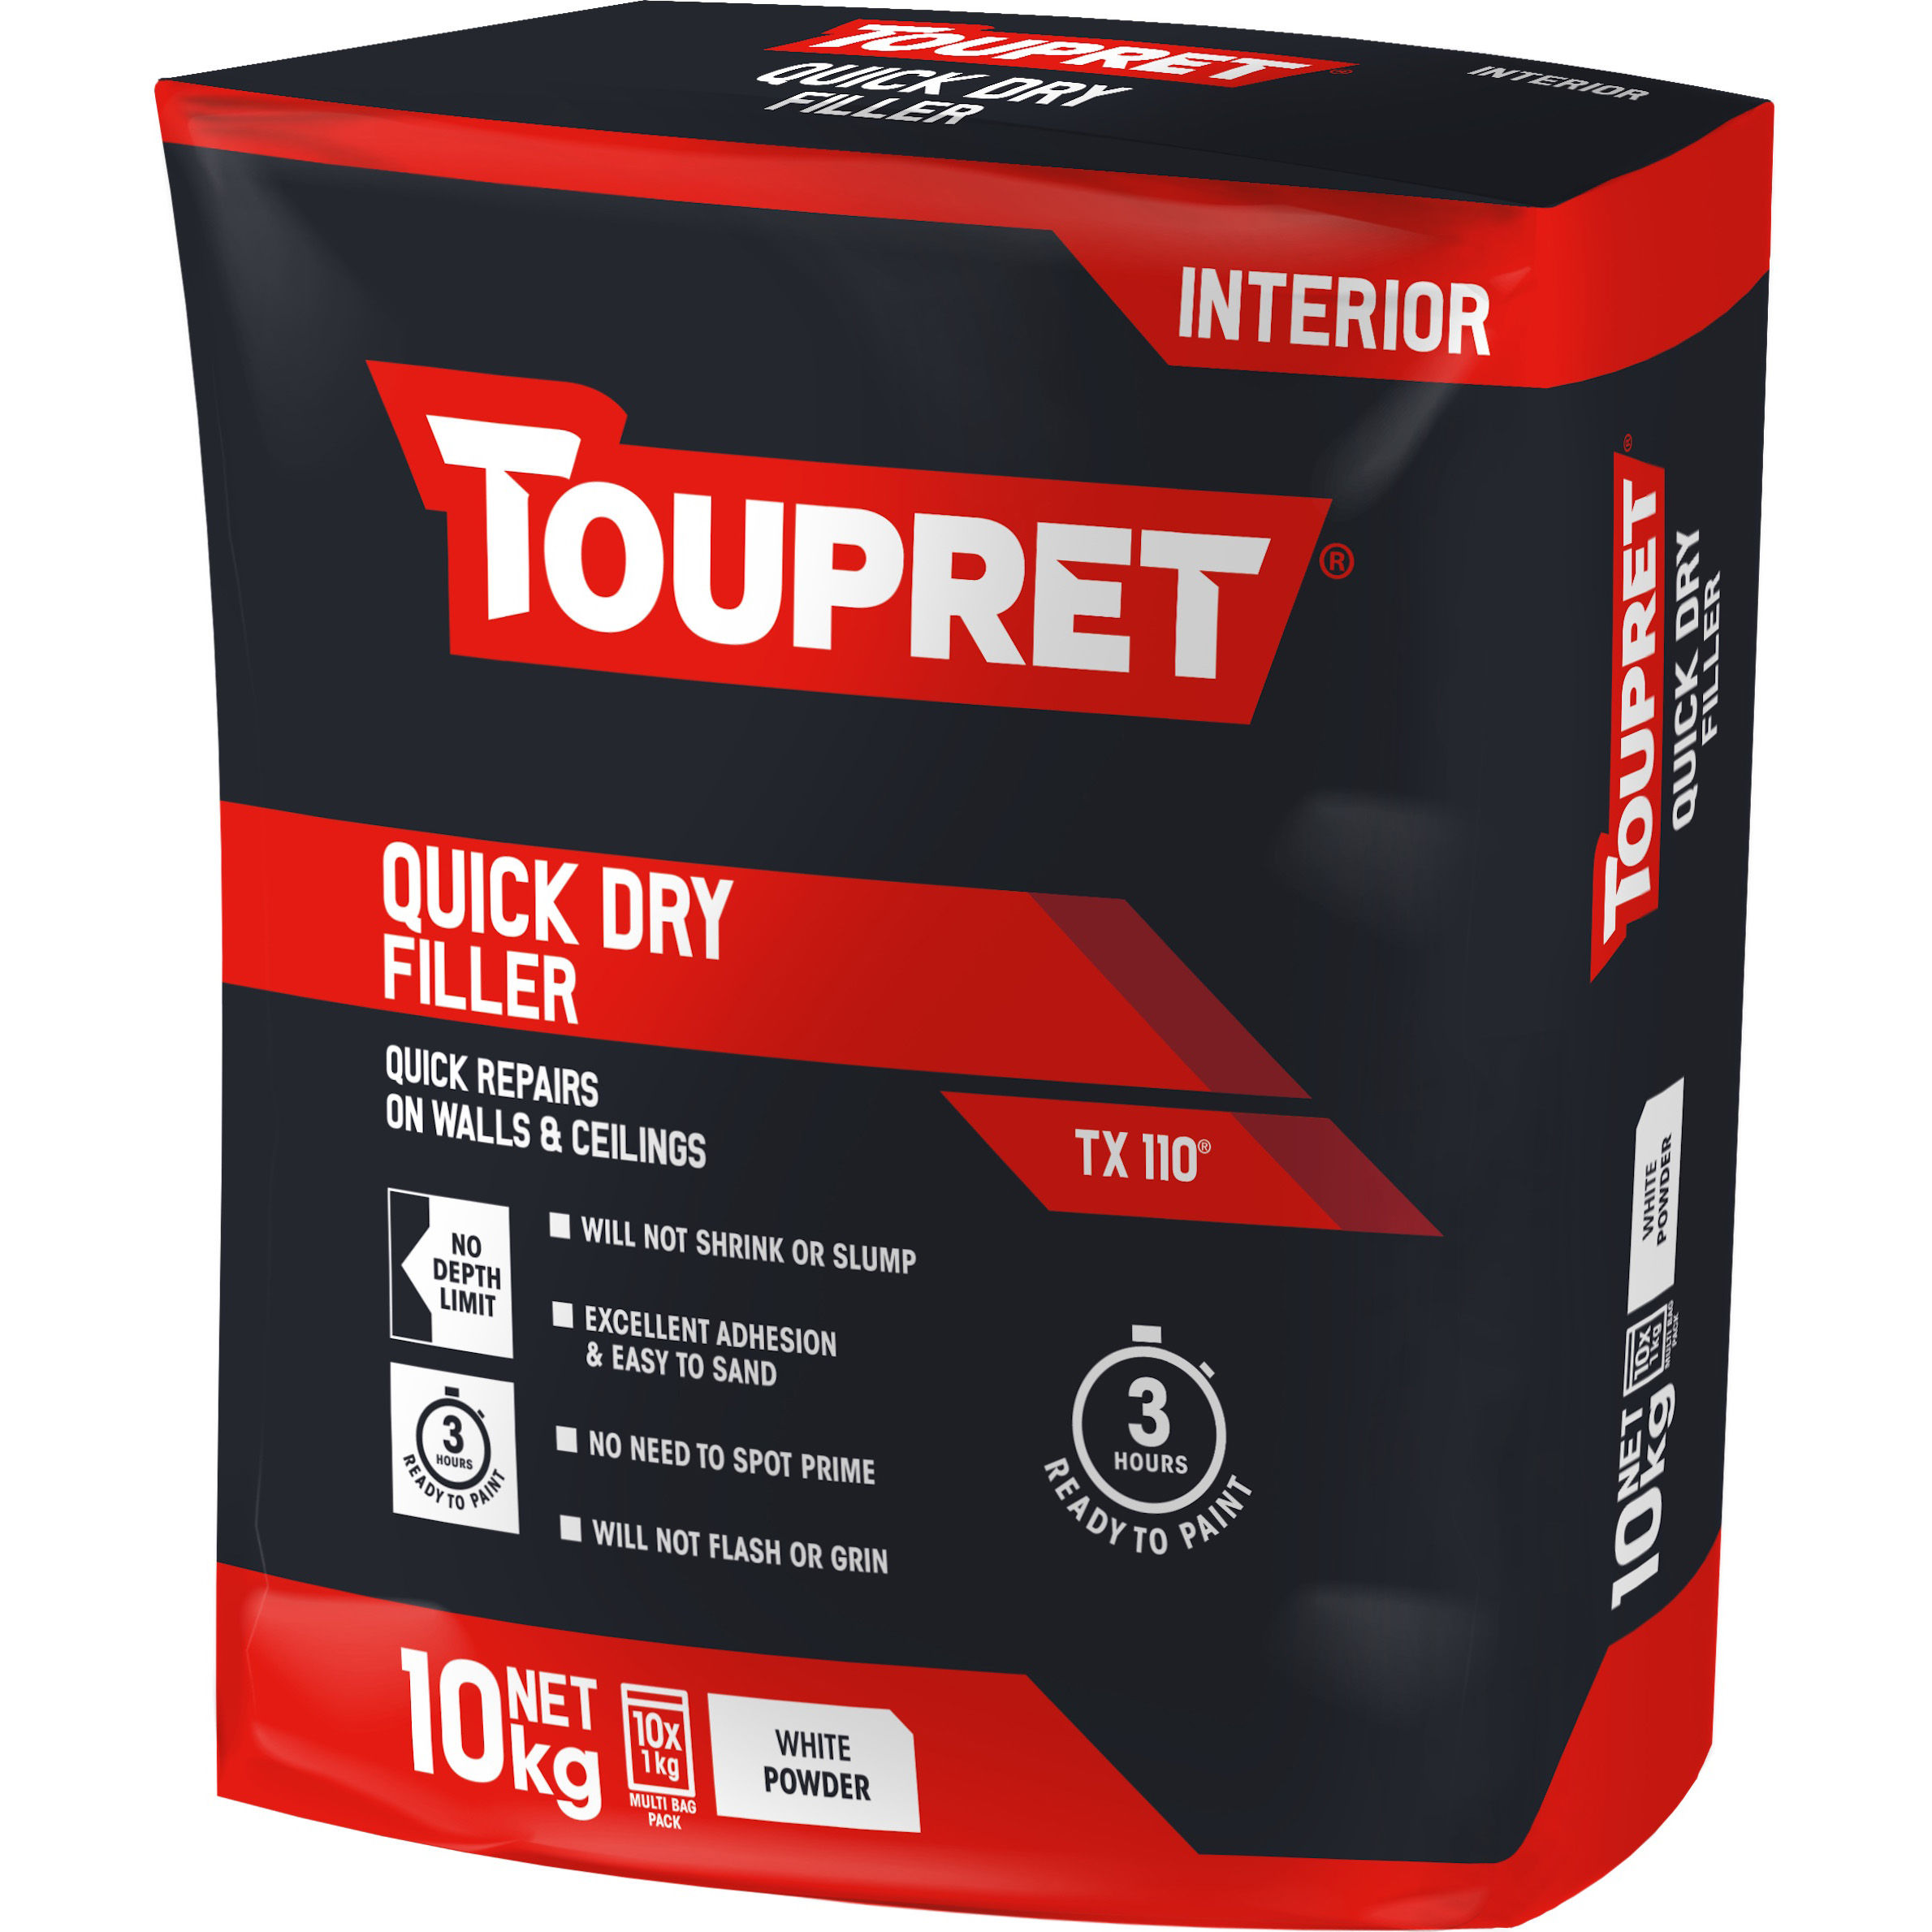 Toupret Quick Dry Filler - Tx 110 - Bag in Bag